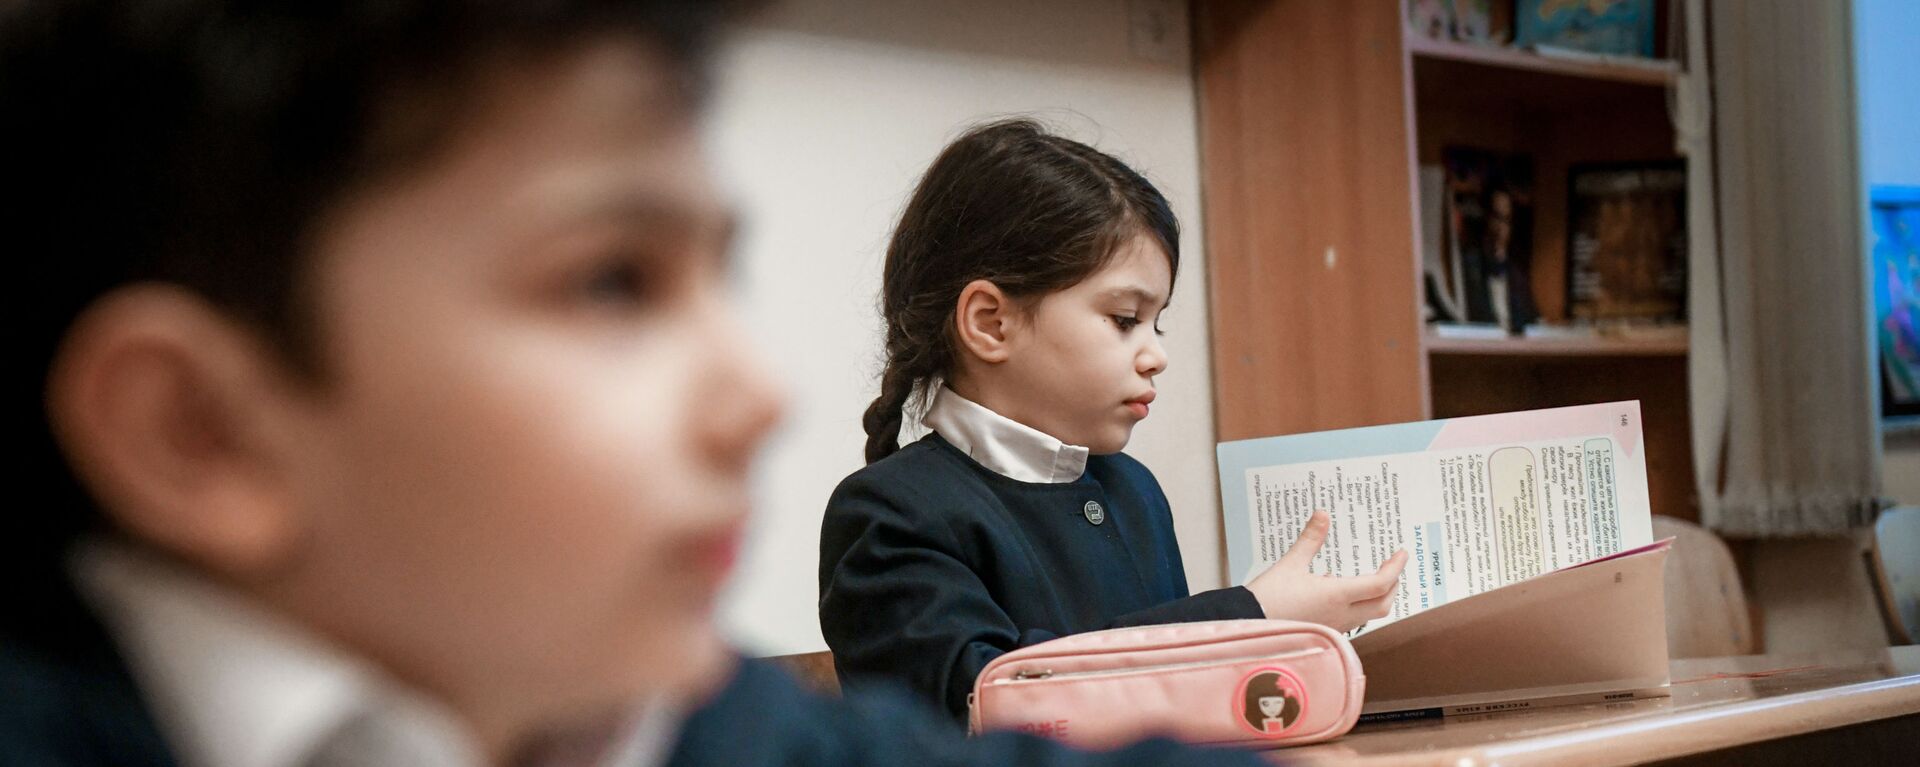 Возобновление очных занятий в бакинских школах, 1 февраля 2021 года - Sputnik Azərbaycan, 1920, 05.02.2021